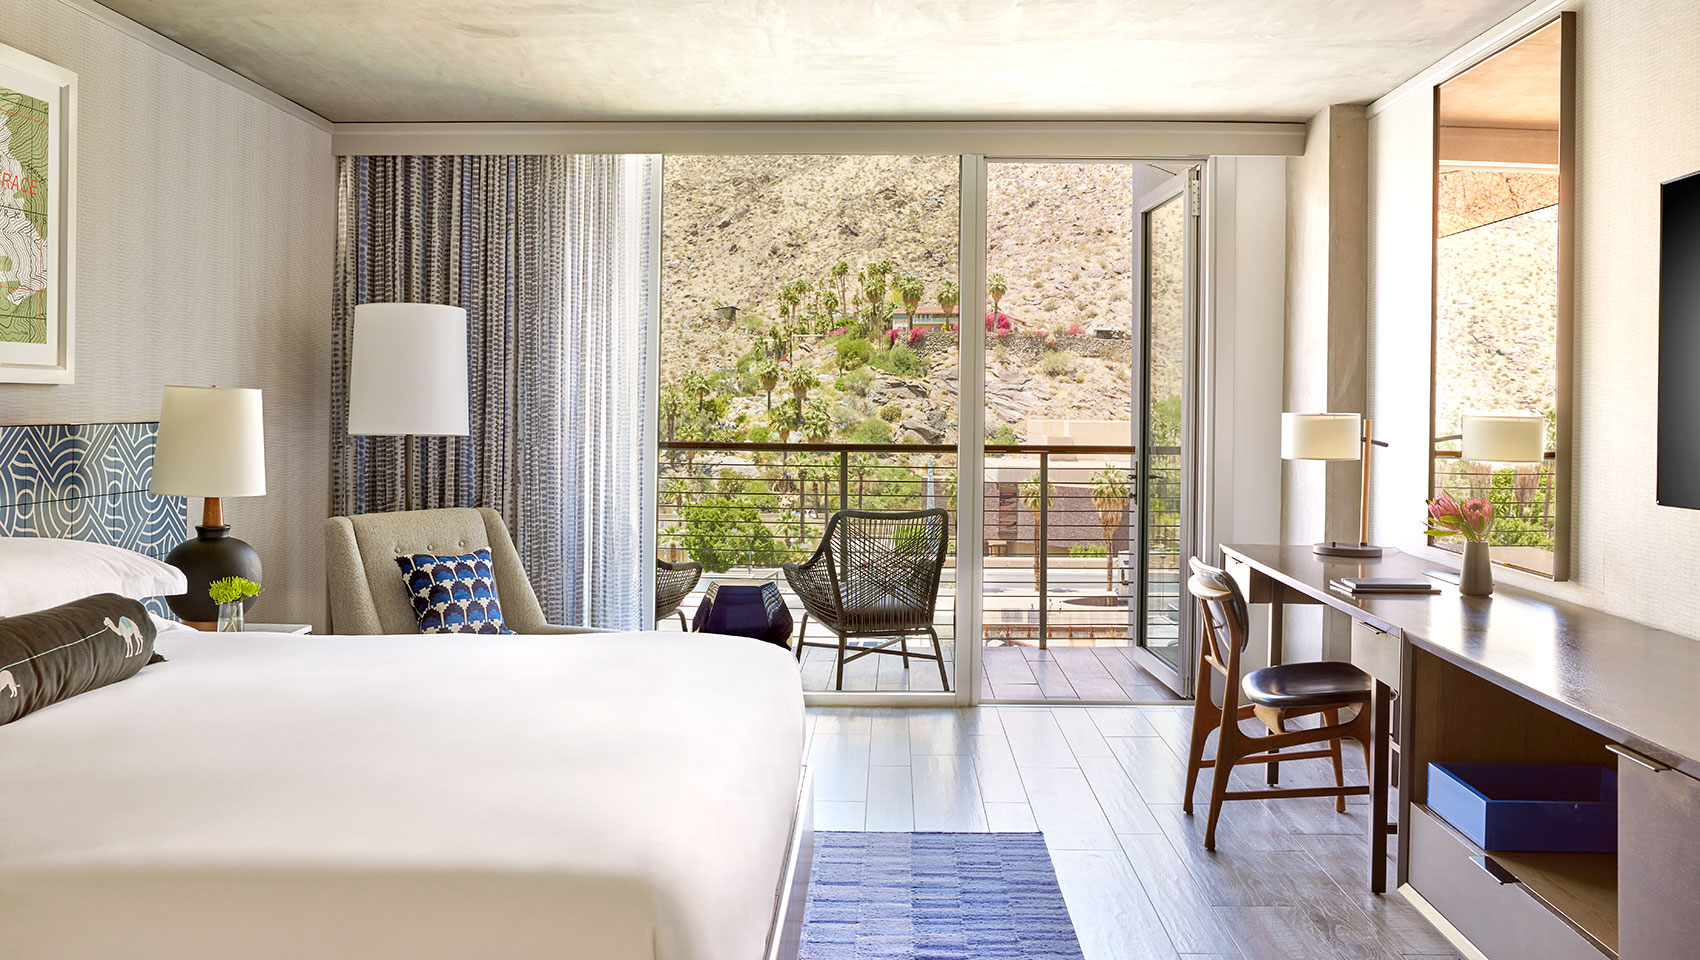 Kimpton rowan palm springs hotel king guestroom